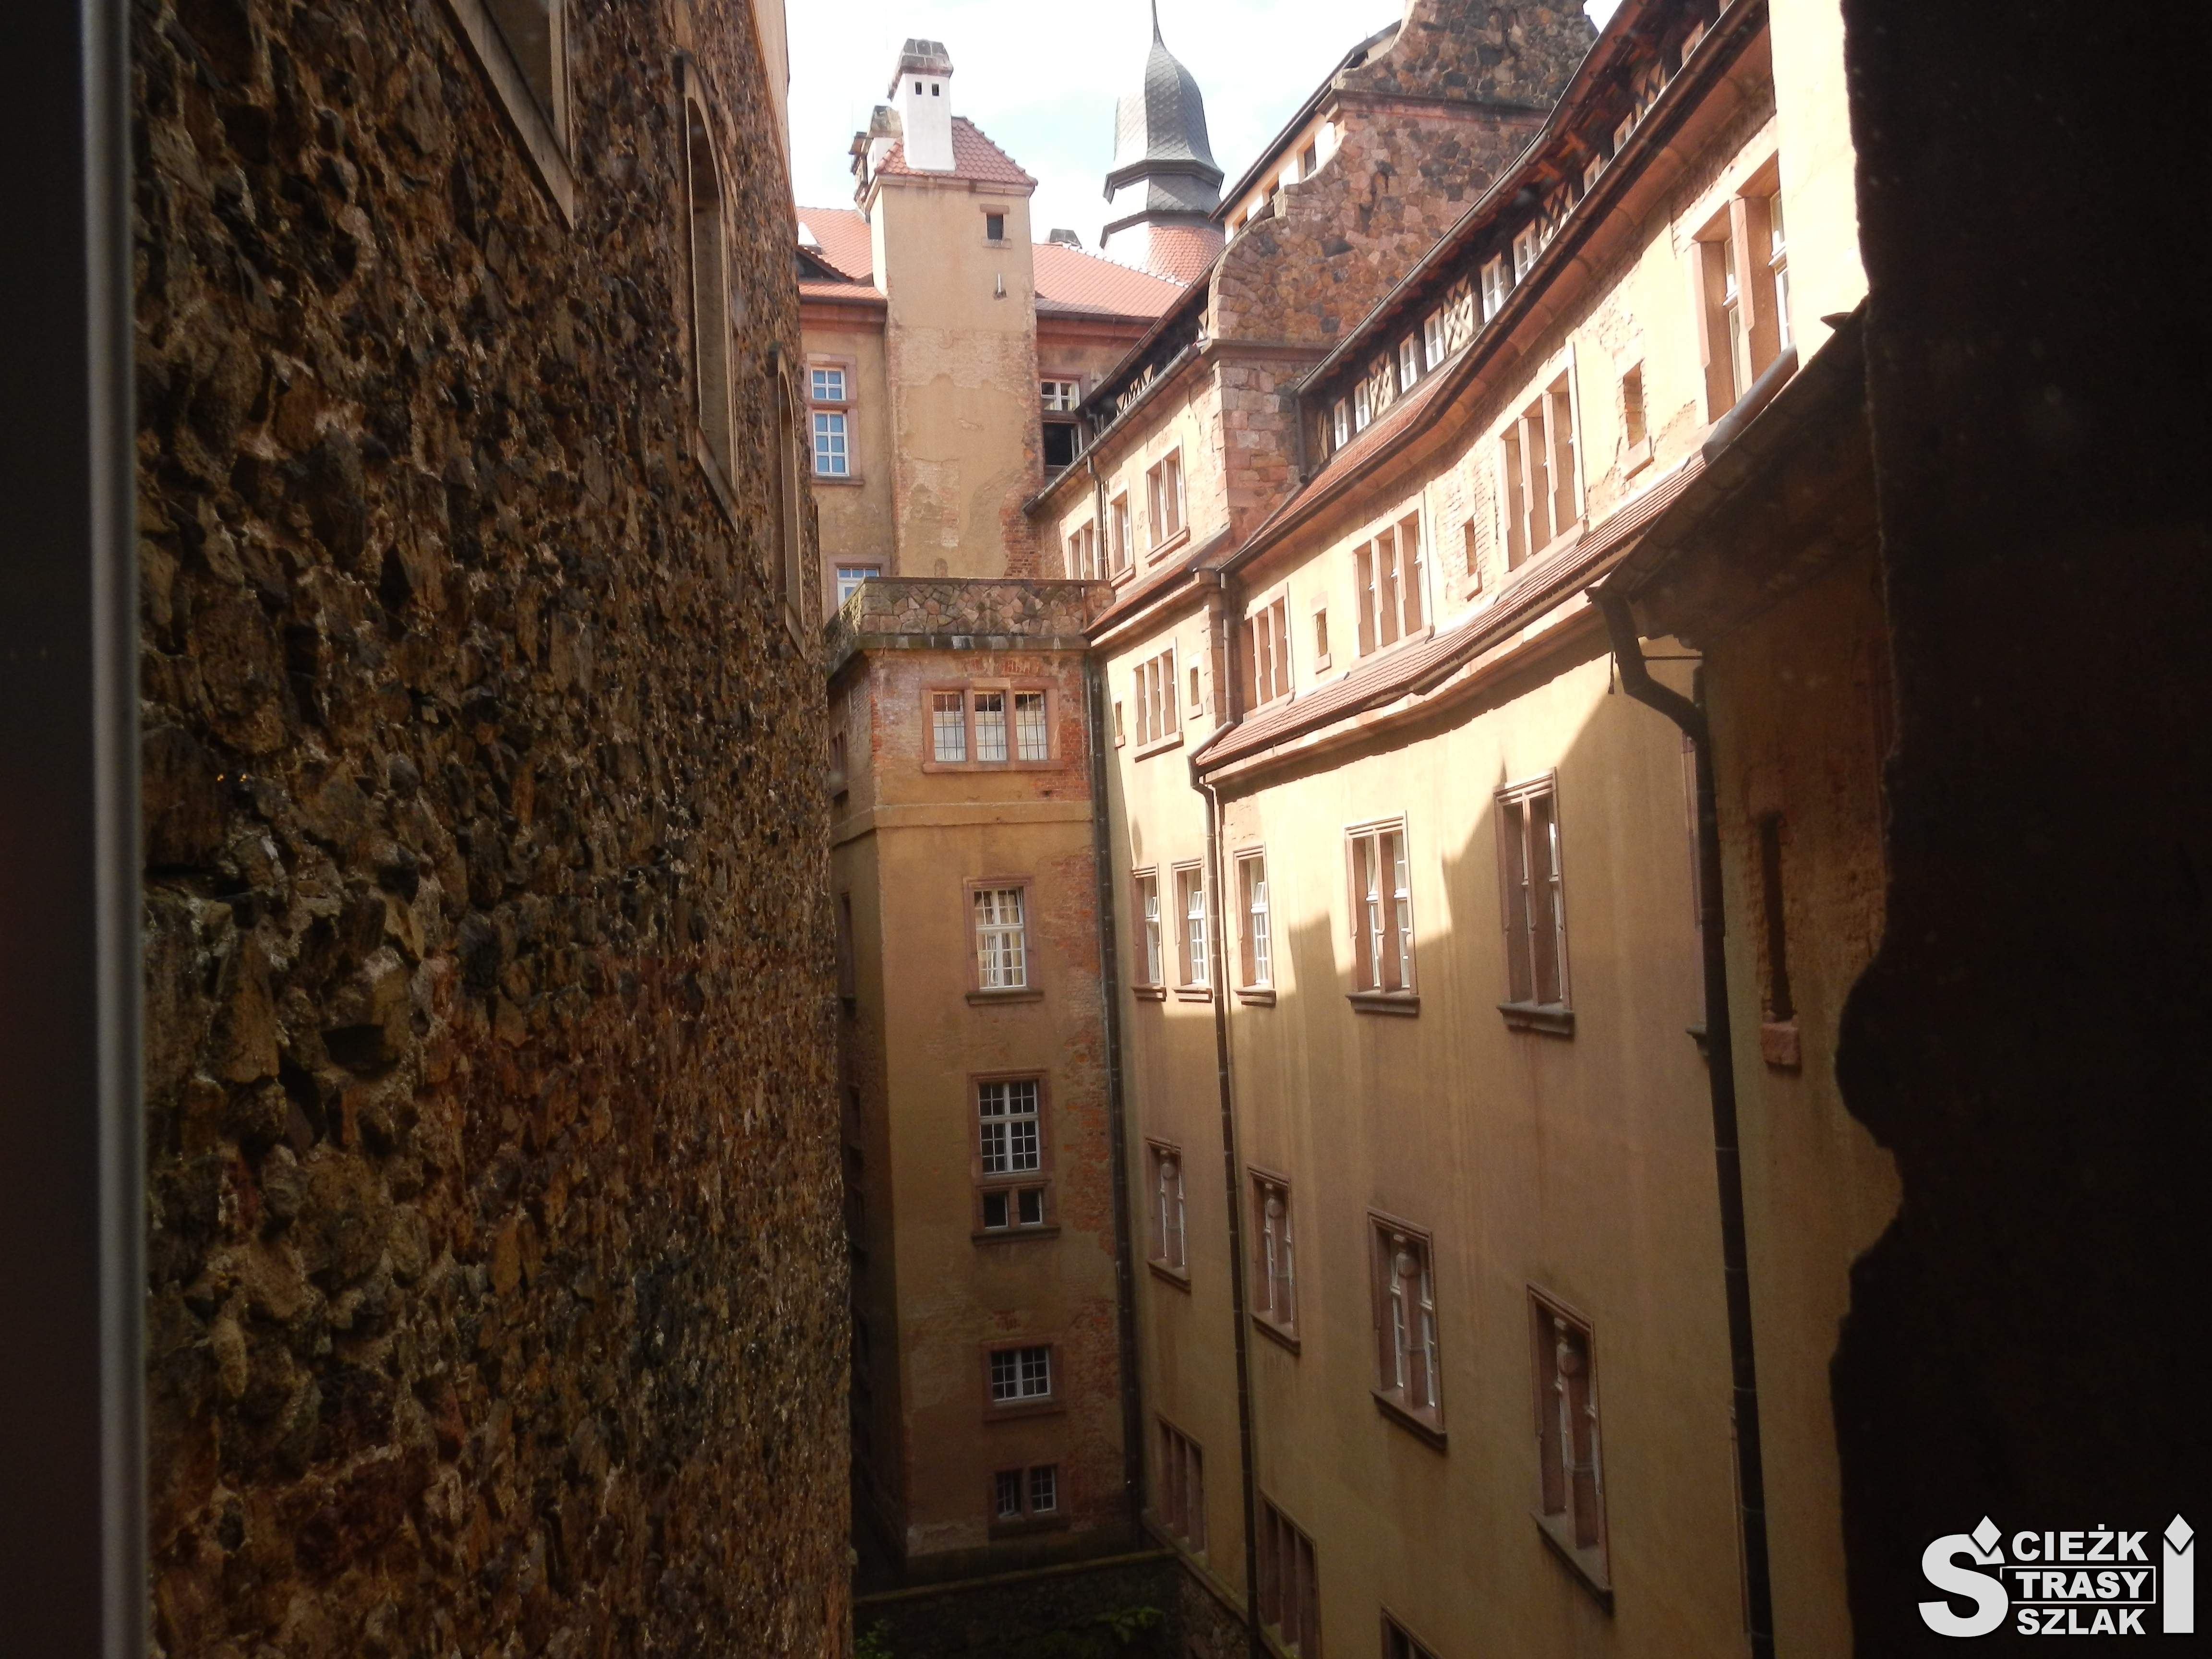 Wijący się bluszcz po ścianie z oknami wielokondygnacyjnego budynku Zamku Książ